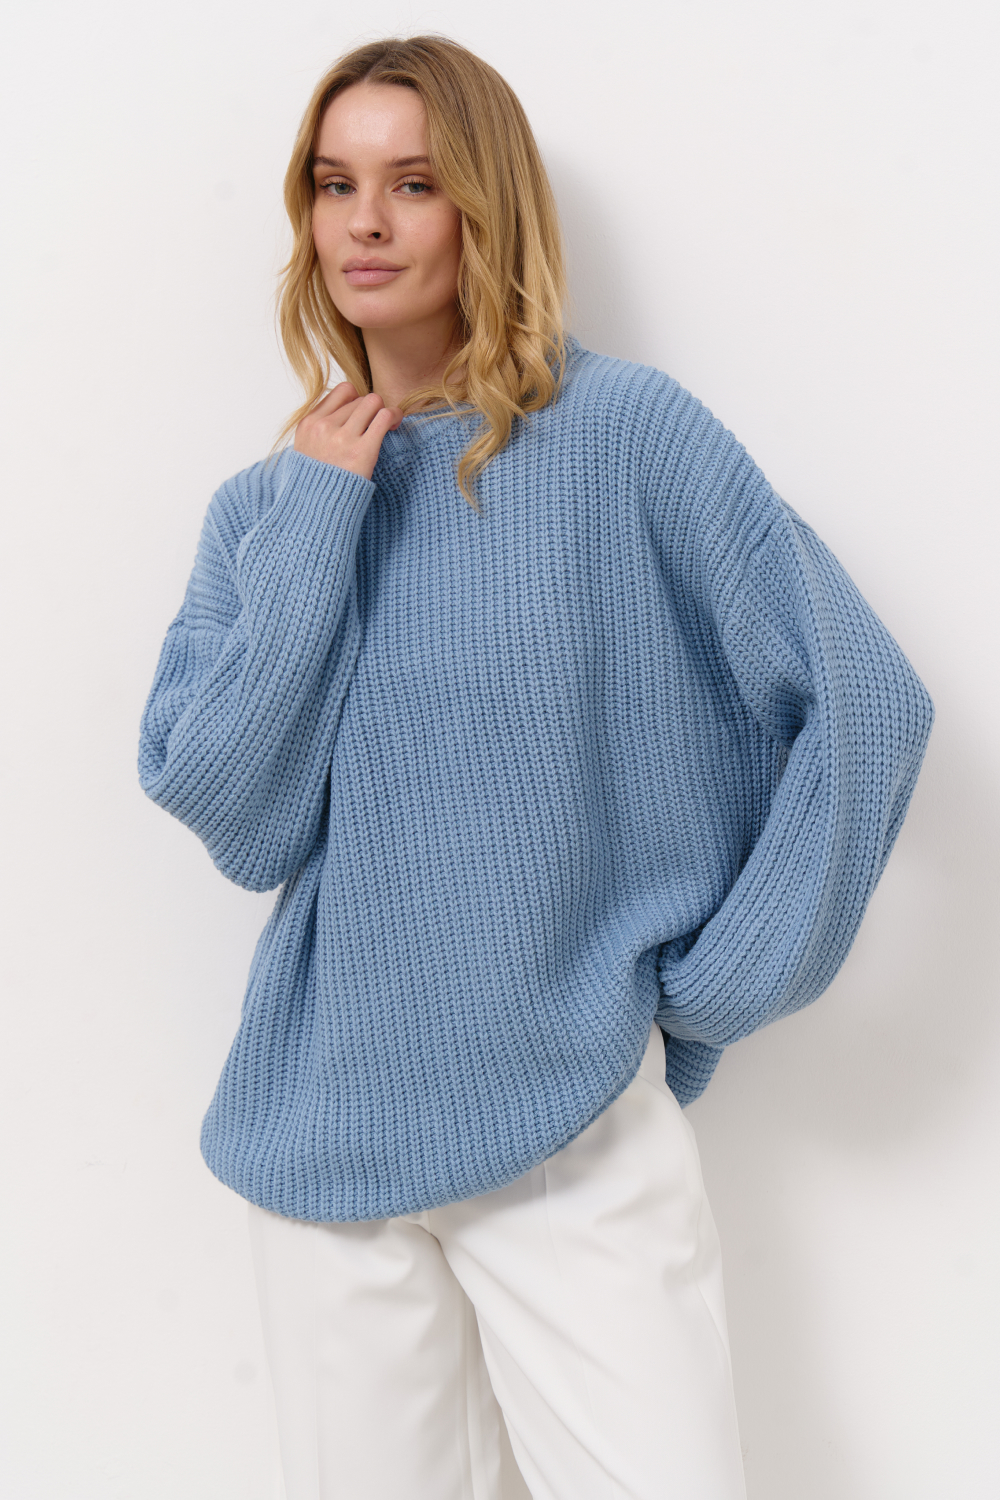 Голубой свитер в стиле oversize - купить в интернет-магазине женской одежды  Natali Bolgar